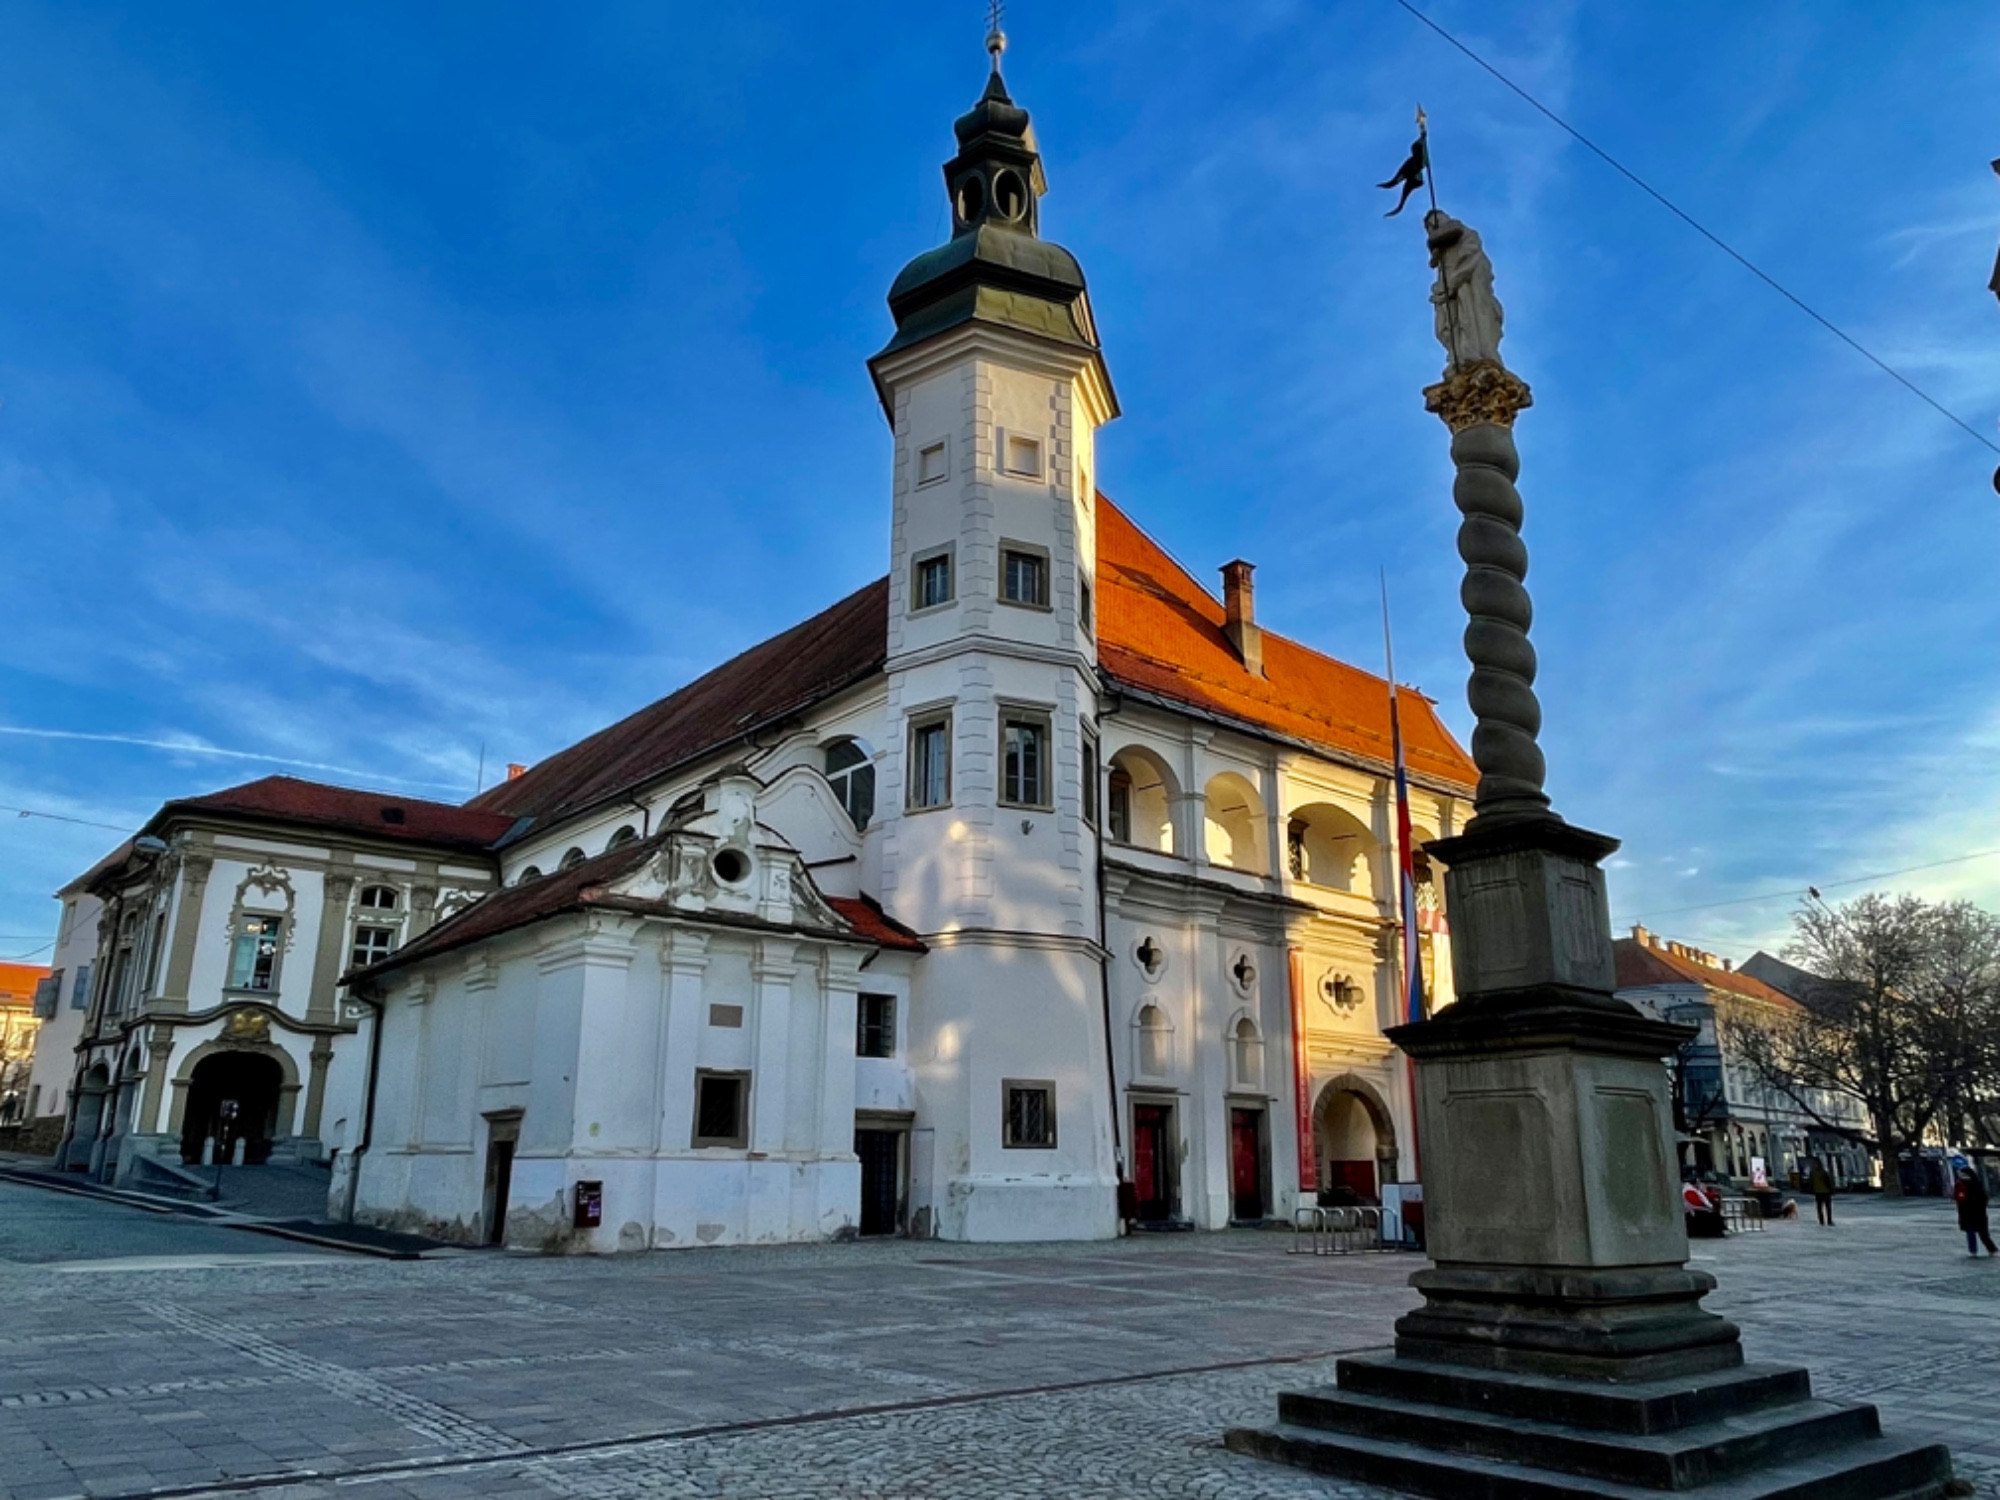 Мариборский дворец, Словения